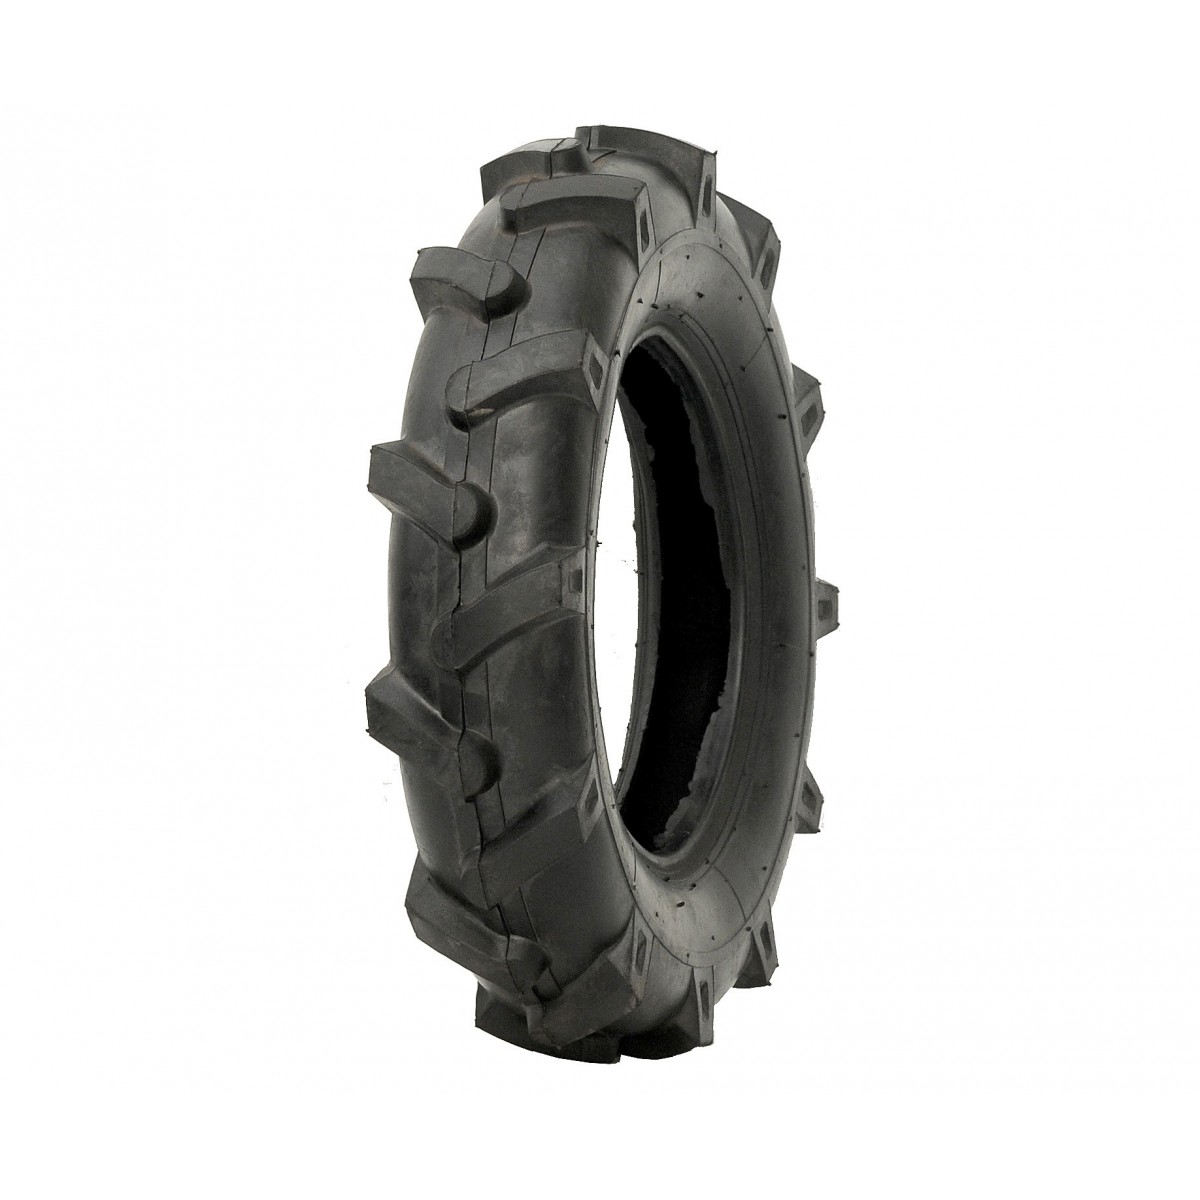 Agricultural tire 4.50-10 6PR 4.5-10 4.5x10 FIR